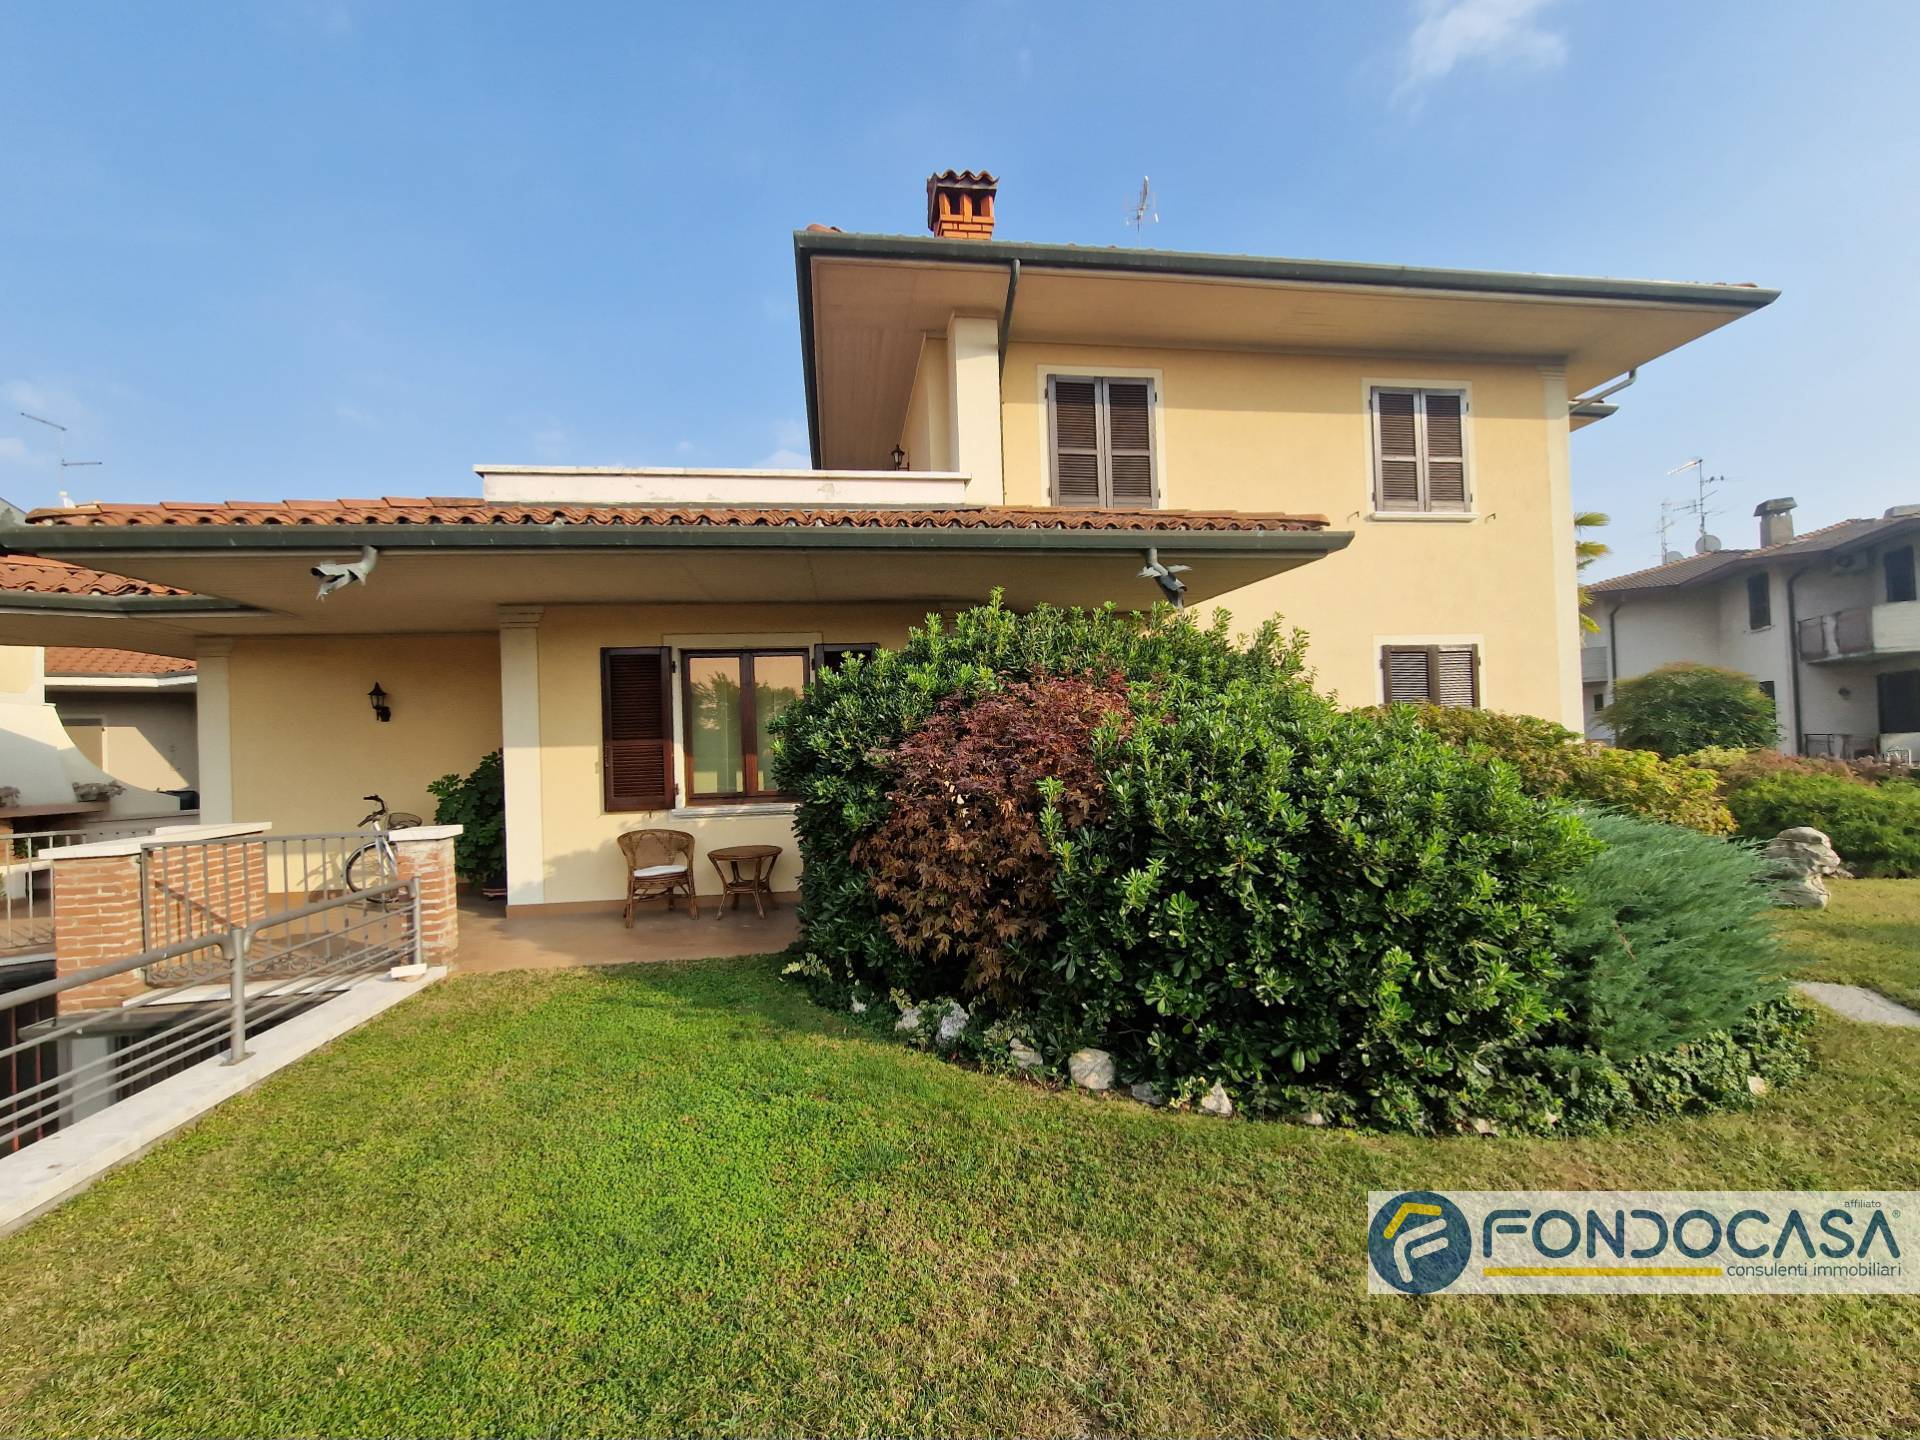 Villa in vendita a Travagliato, 8 locali, Trattative riservate | PortaleAgenzieImmobiliari.it